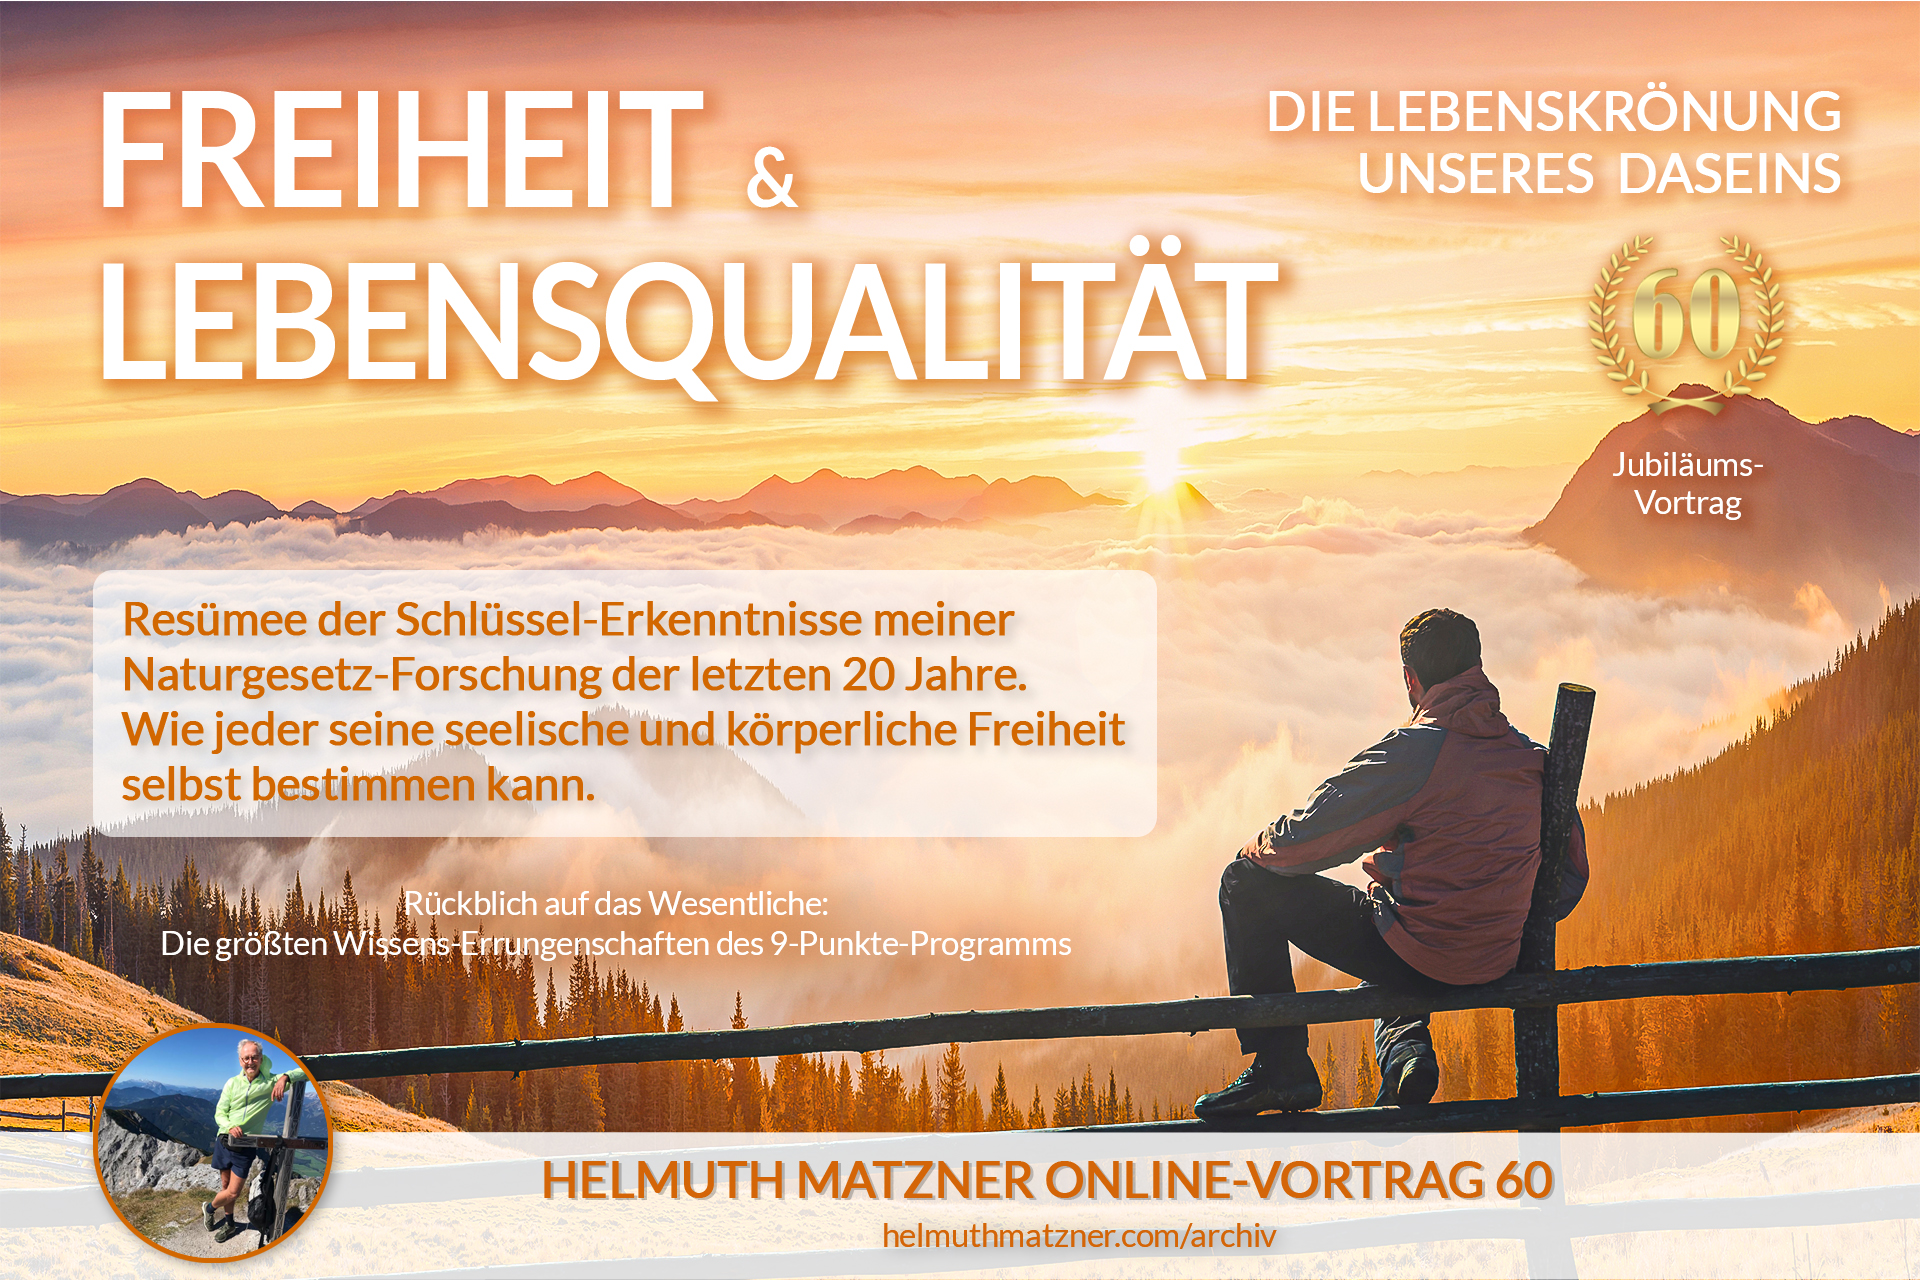 Helmuth Matzner - Online-Vortrag 60 - Freiheit Lebensqualität - ARCHIV v05